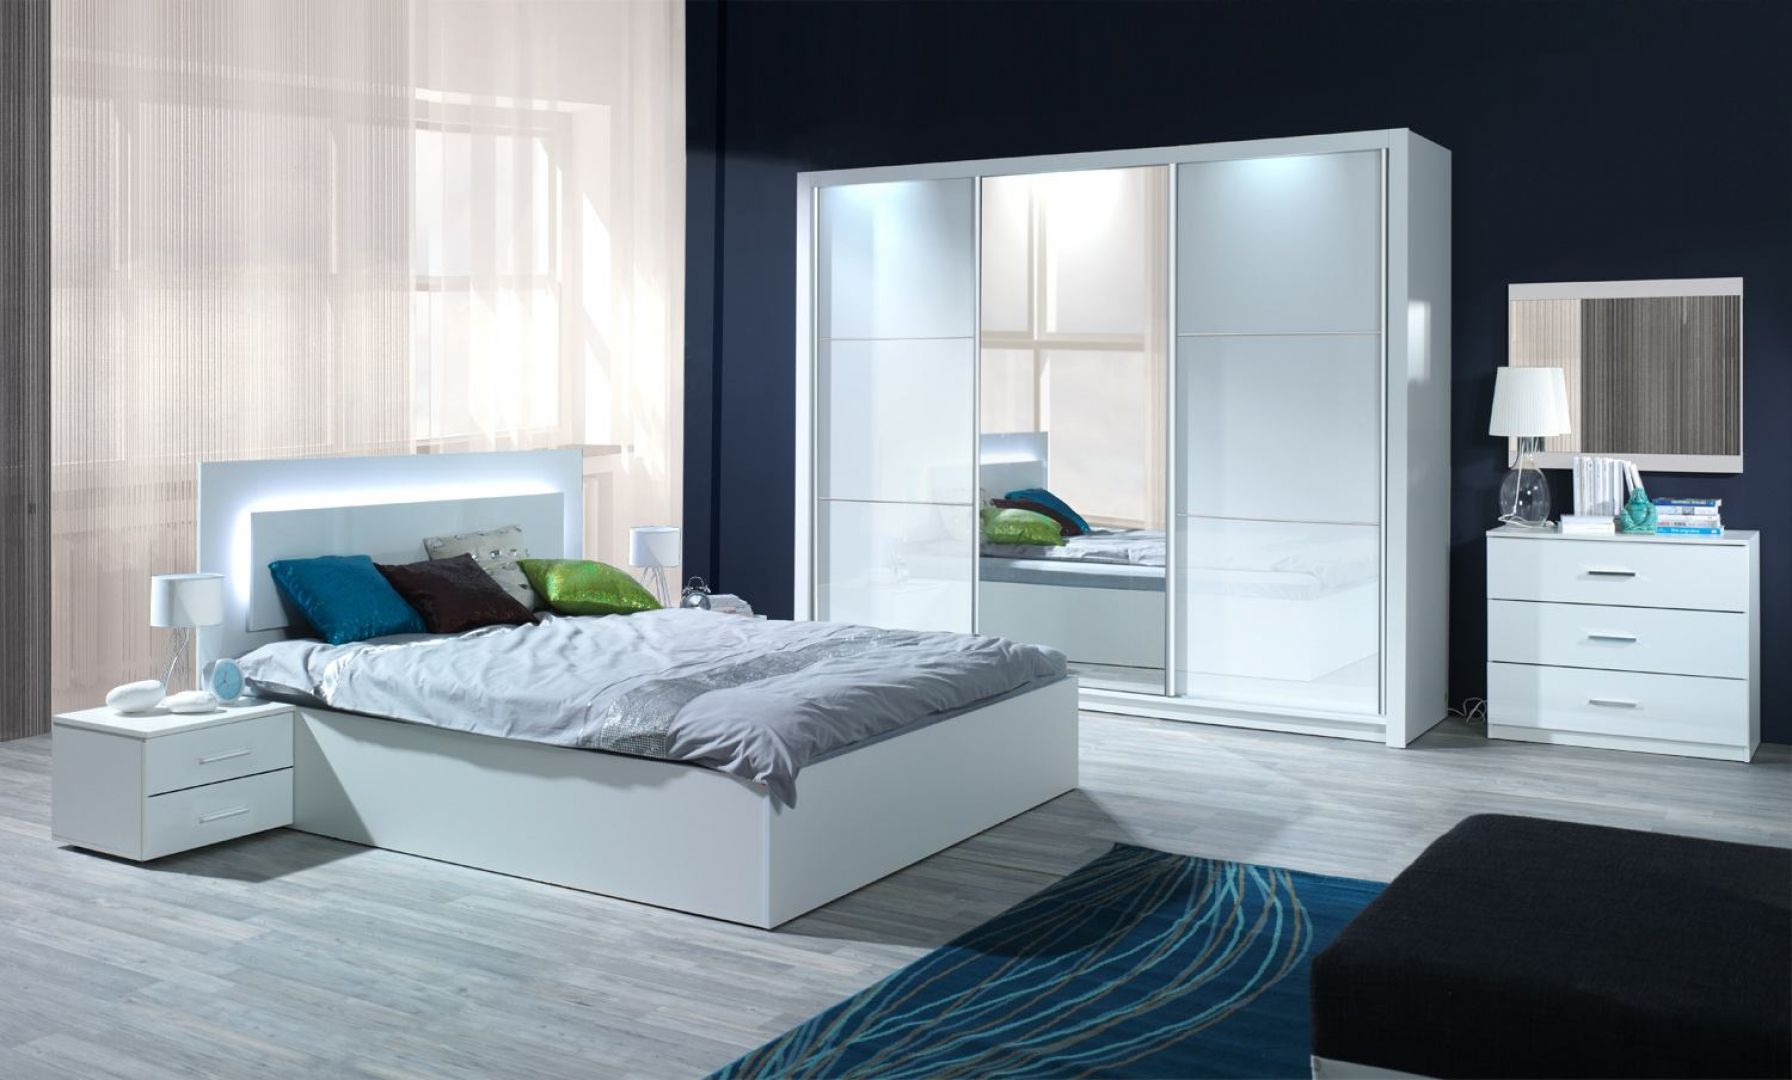 Sypialnia Siena w kolorze białym na wysoki połysk. Oparcie łóżka wyposażone jest w efektowny system oświetlania. Cena łóżka: ok. 670 zł. Fot. Agata Meble 